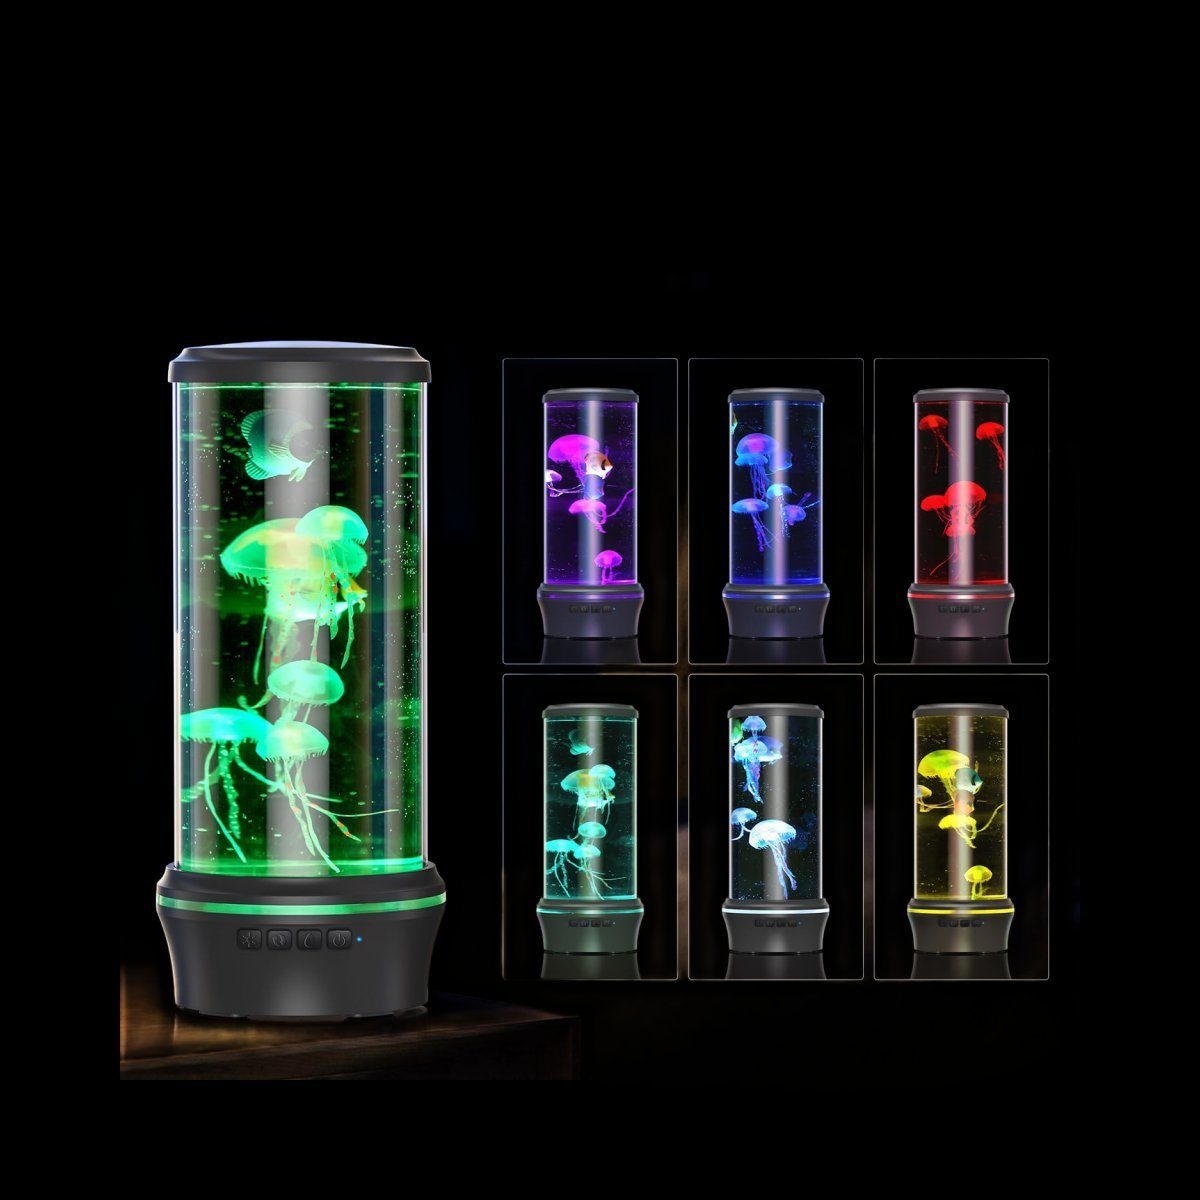 DOPWii Nachtlicht Jellyfish Lamp,Realistischer Aquarium-Effekt,Leise,mit Schwarz Timer-Funktion